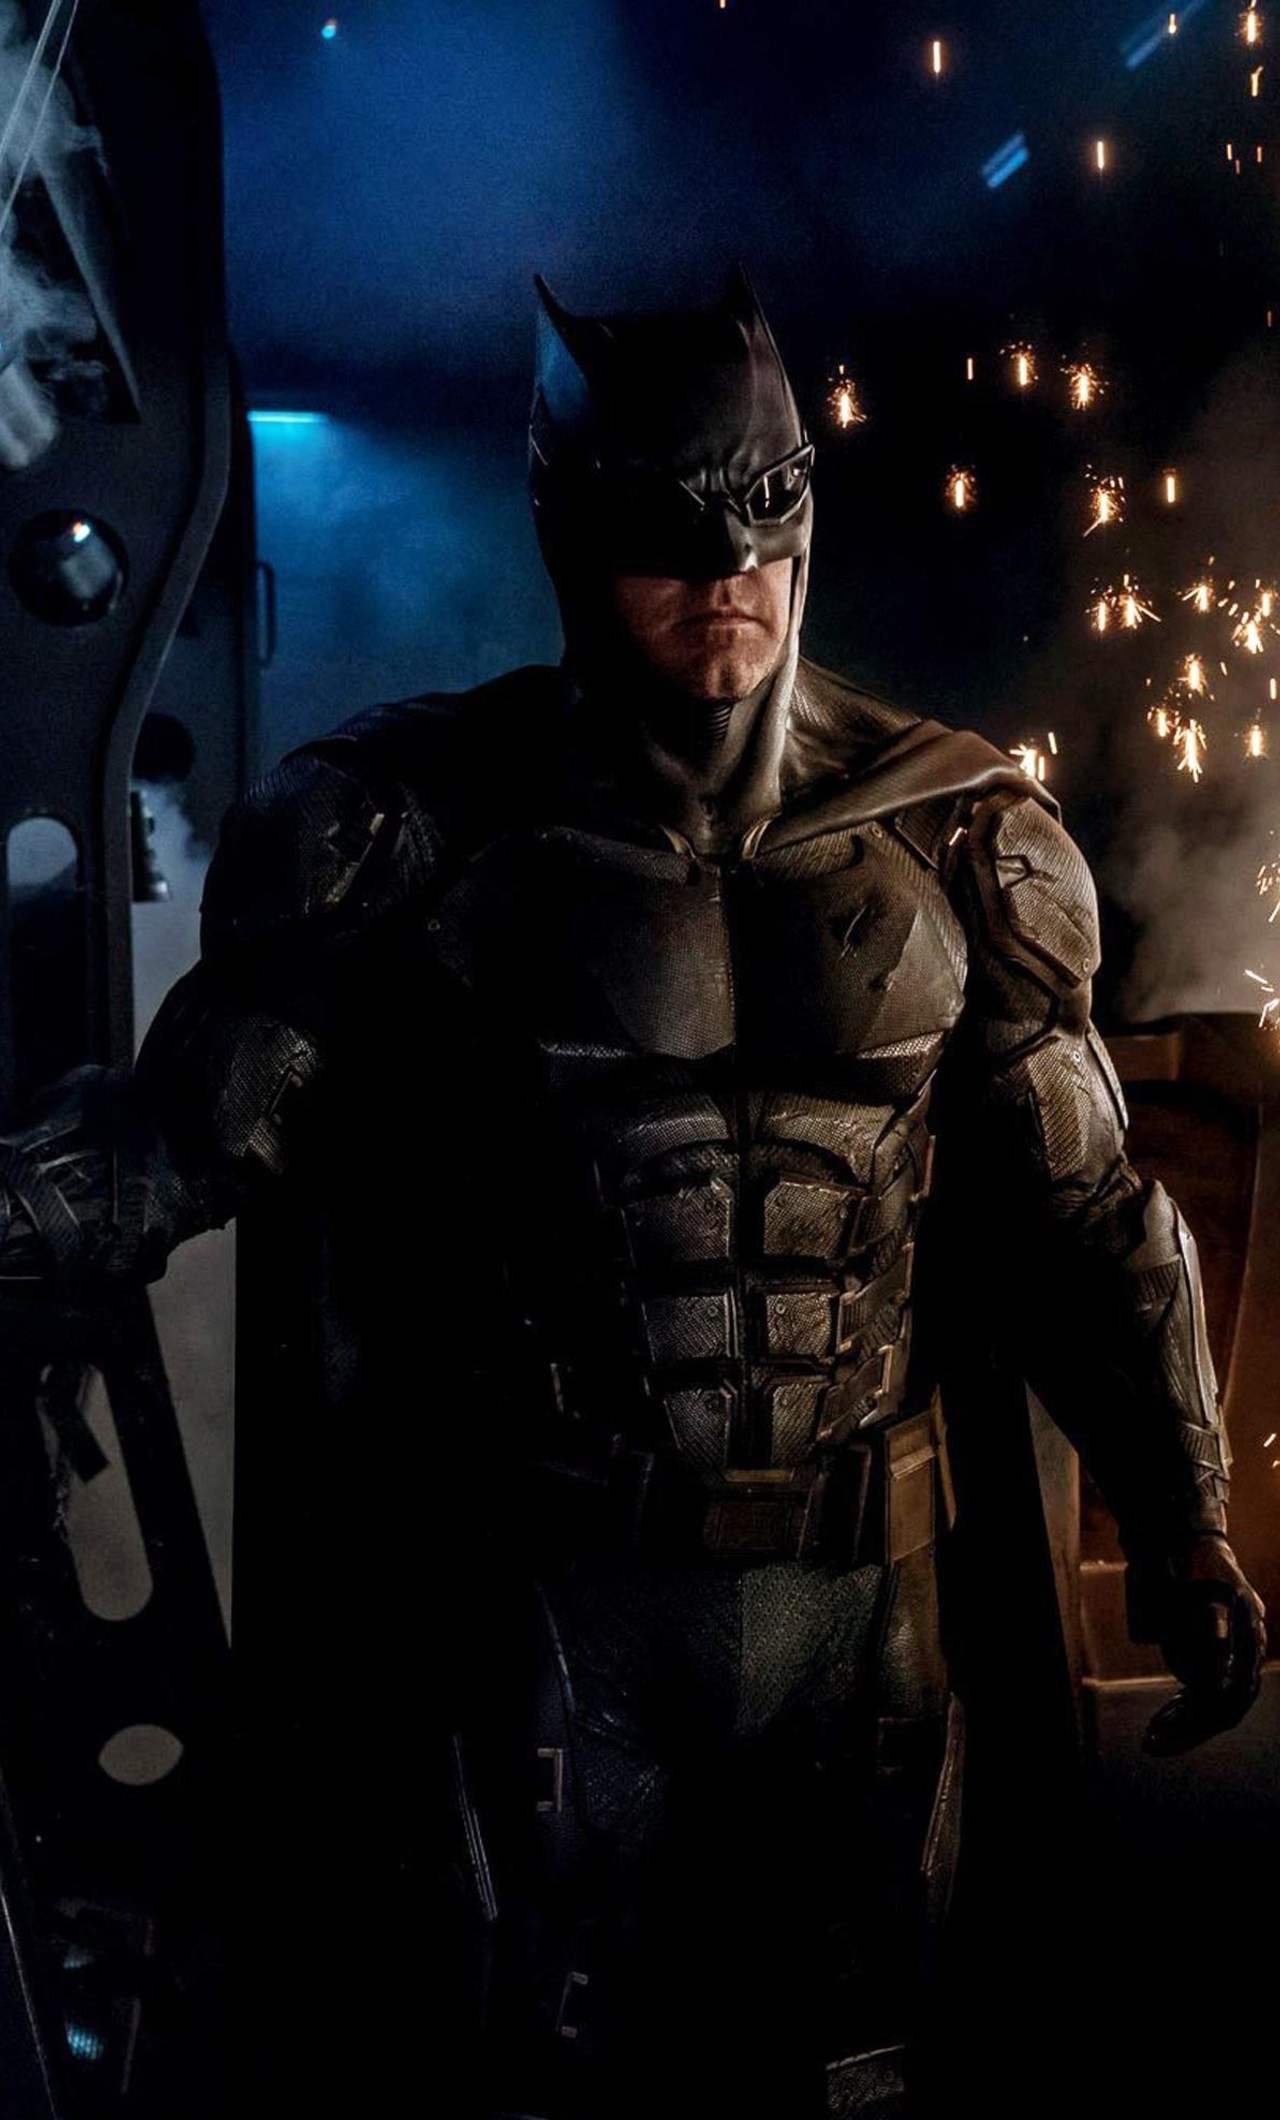 Justice League Batman Wallpaper - Justice League Batman Tactical Suit - HD Wallpaper 